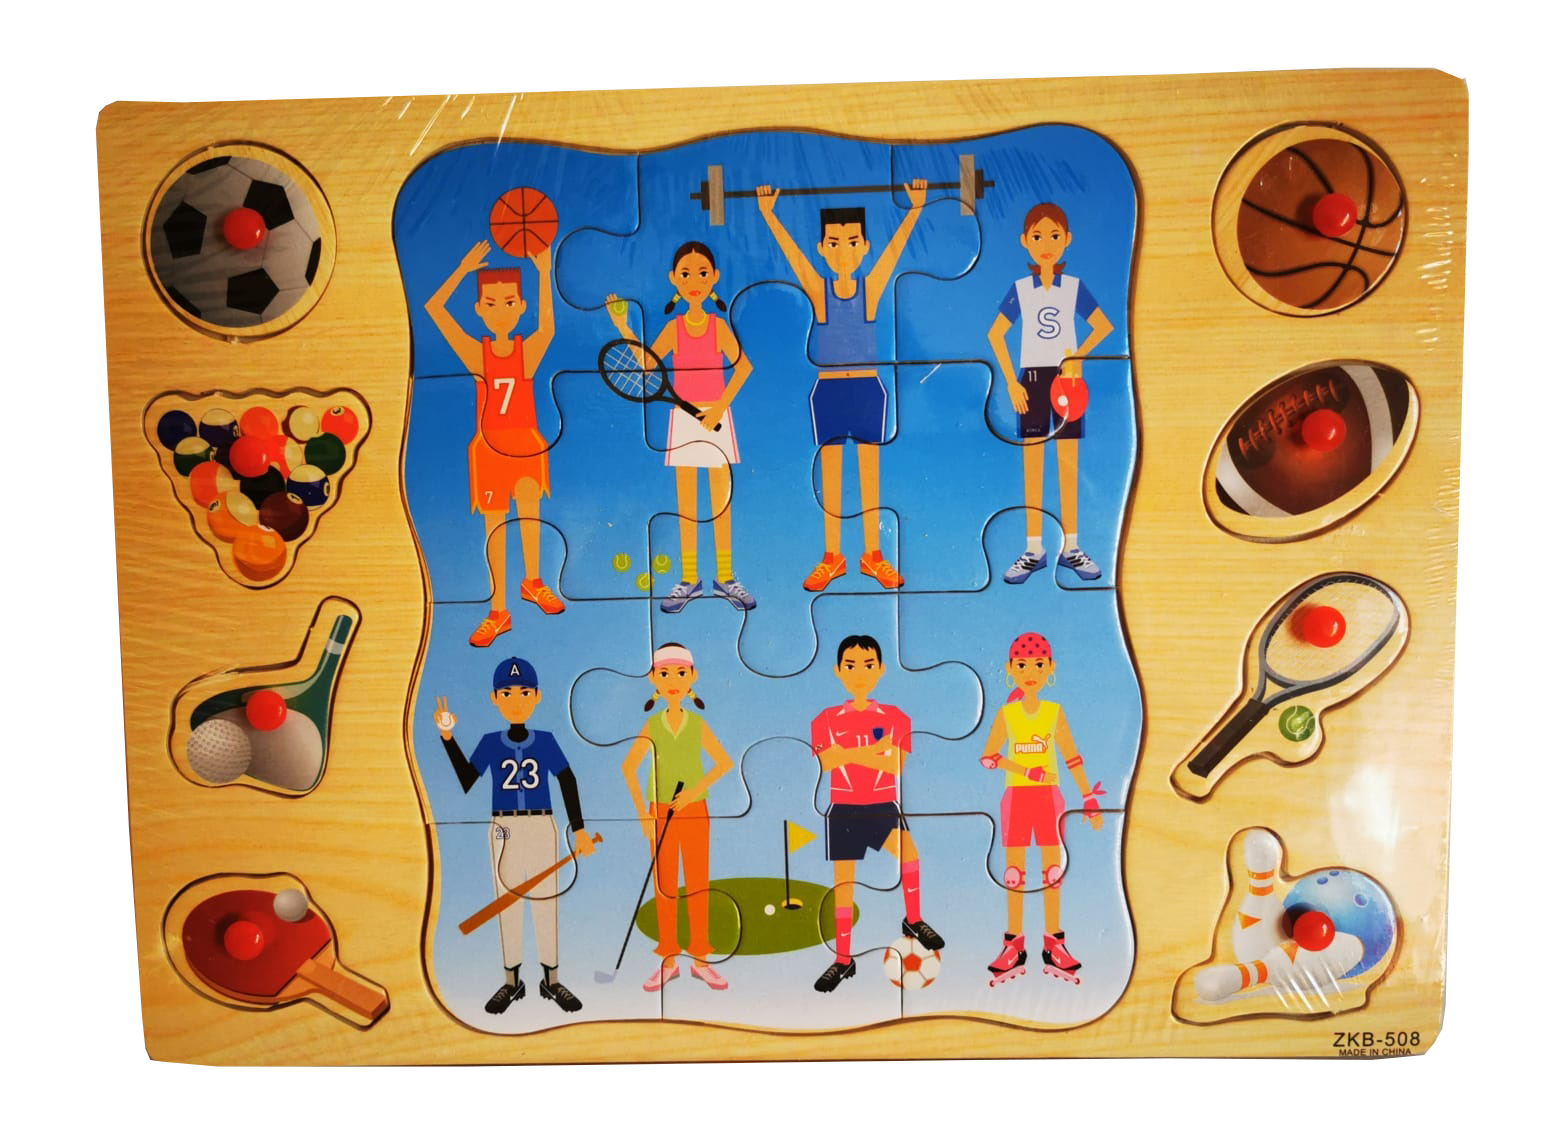 Acest puzzle realizat din lemn poate ajuta si distra in acelasi timp deoarece modul prin care acesta o face nu produce plictiseala,  puteti invata sporturile preferate si multe altele!
Acesta contine 8 piese !